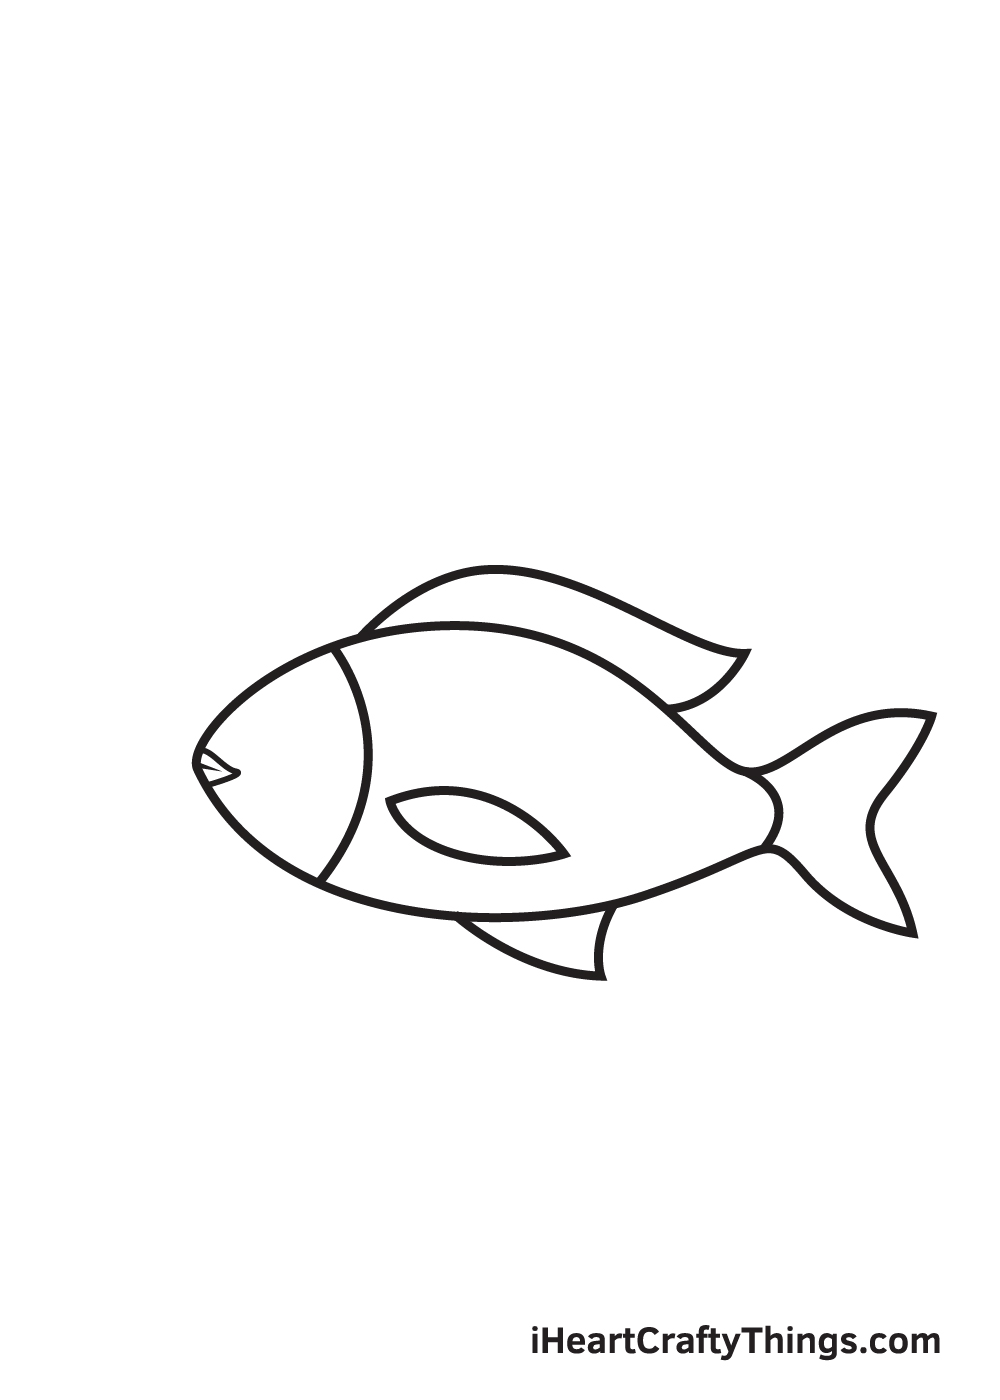 fish drawing - step 6